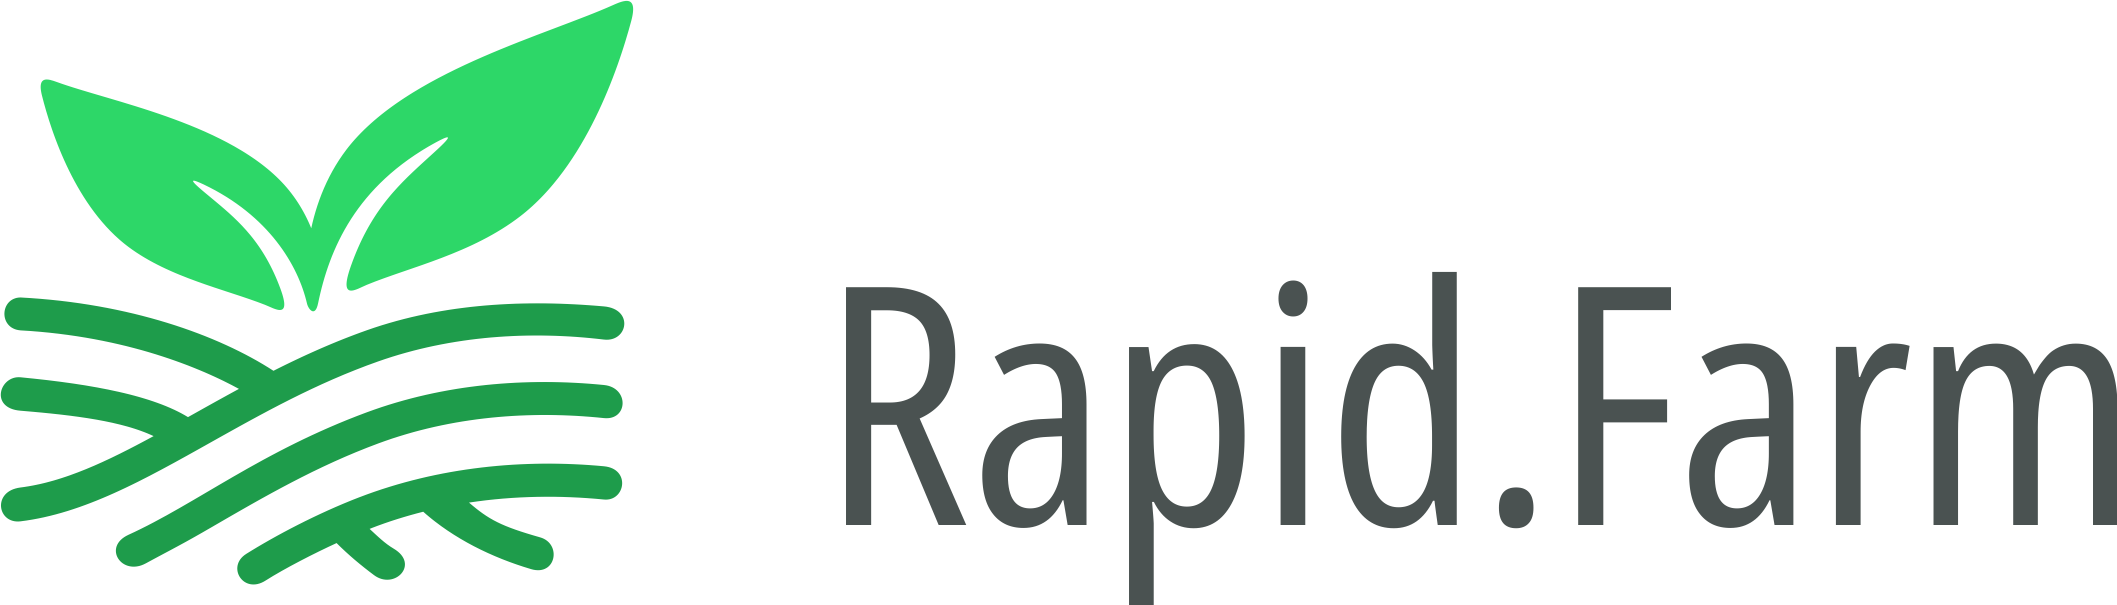 Rapid Farm logo